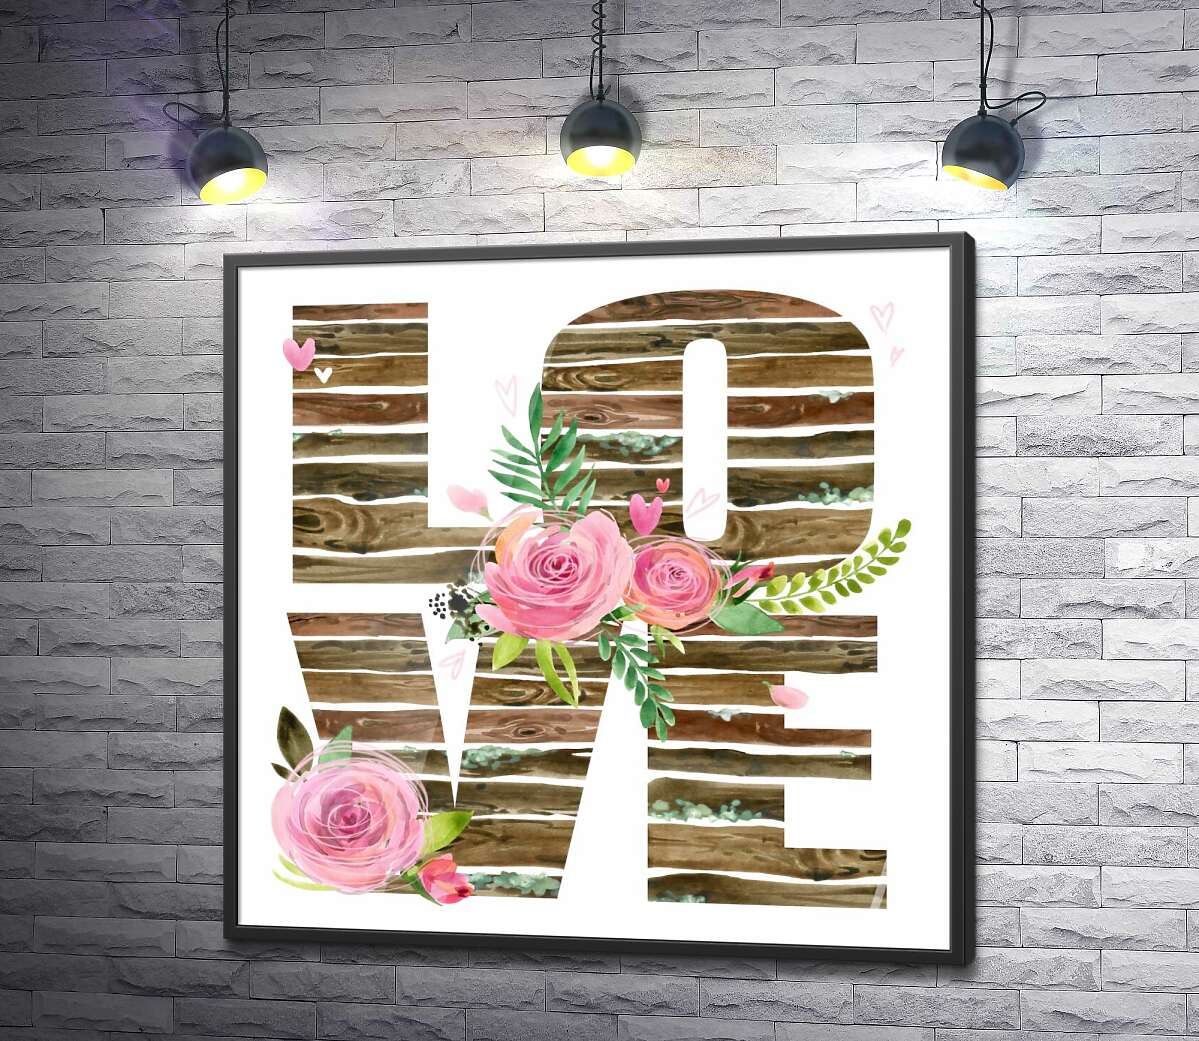 постер Деревянные буквы "love" украшены розами